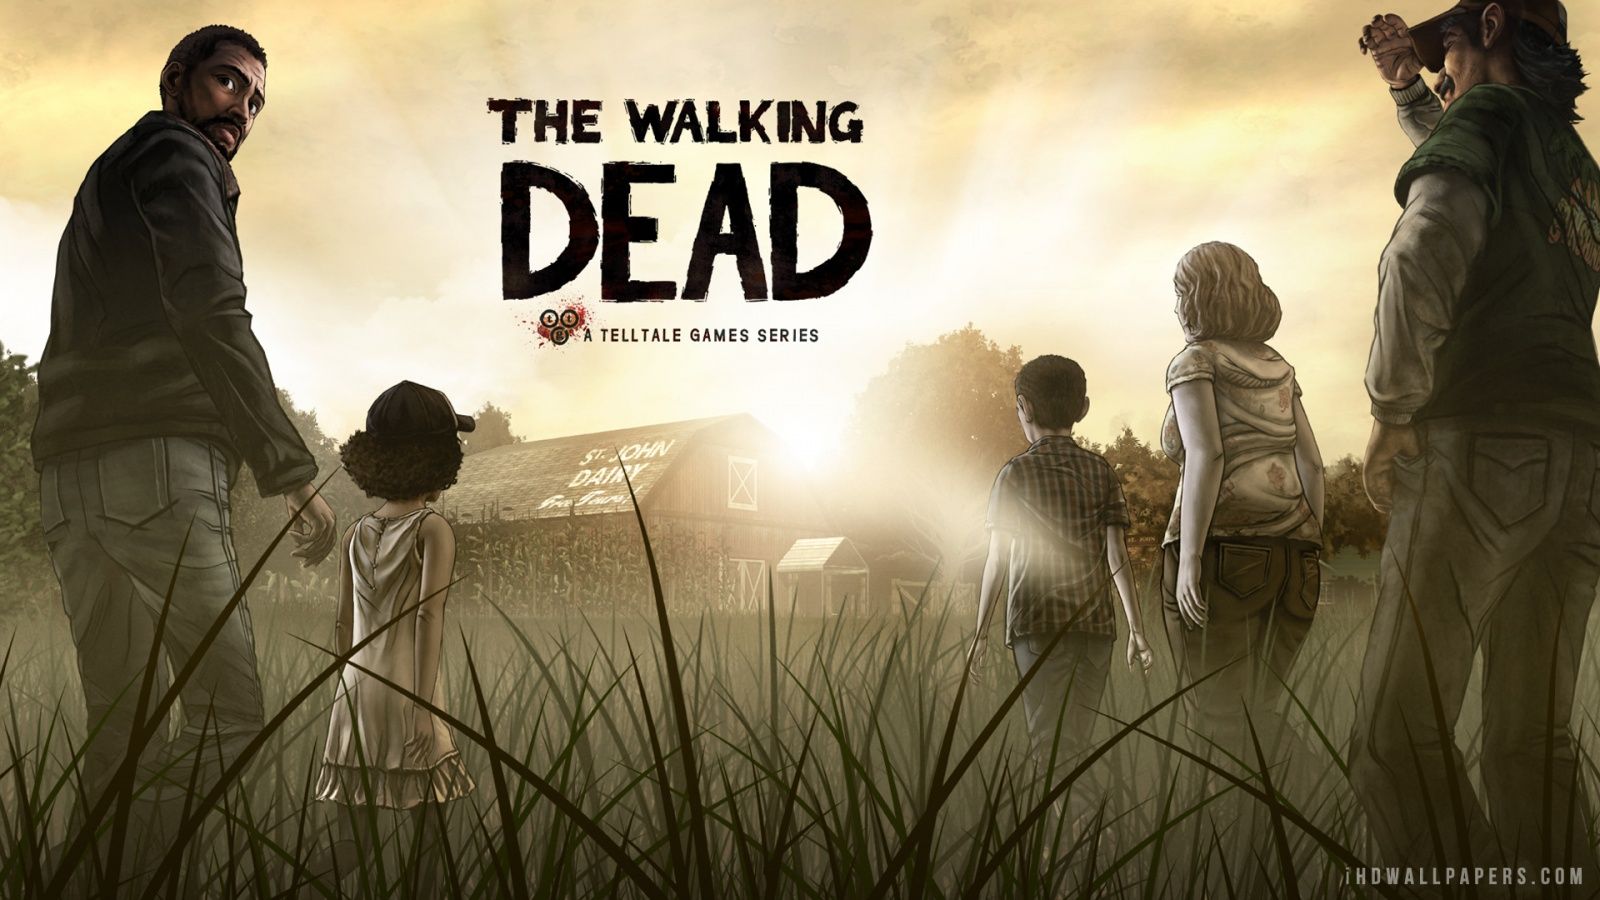 The Walking Dead HD Wallpaper - iHD Wallpapers